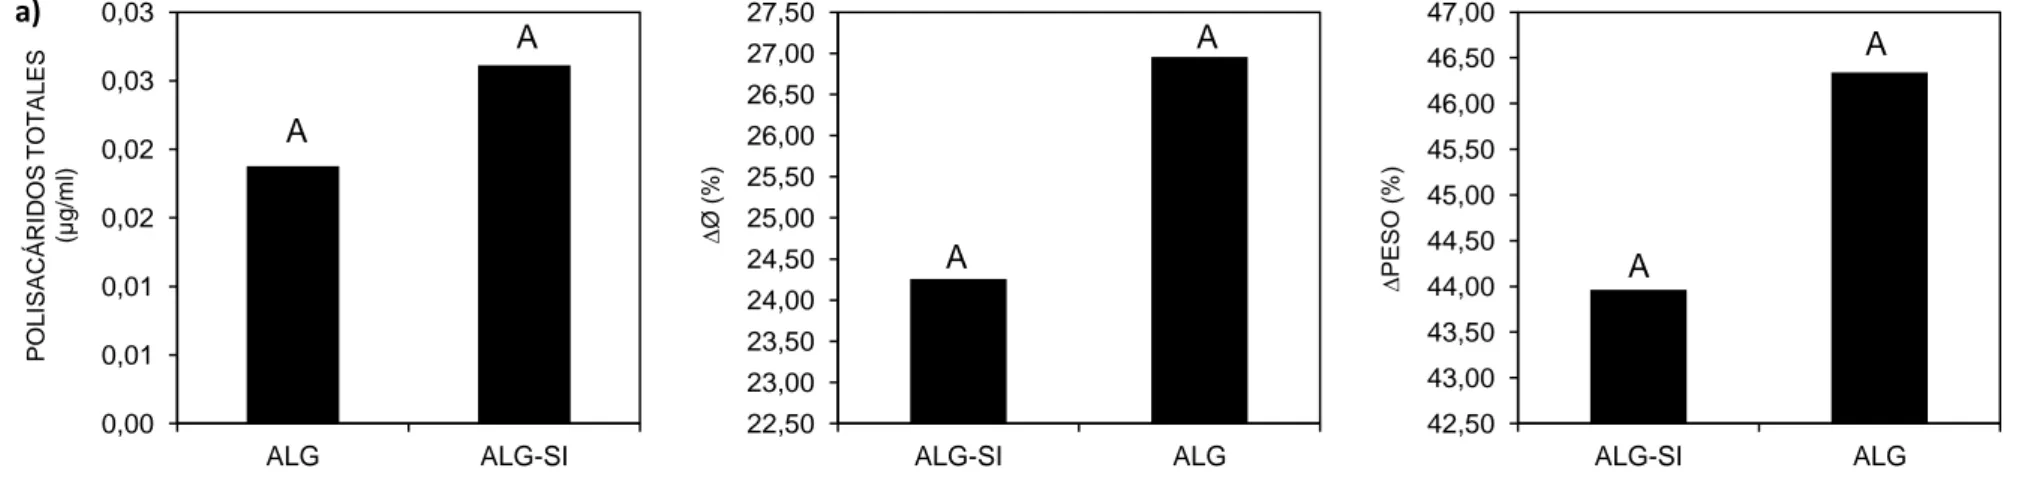 Figura 12. Comparación de  a) concentración de polisacáridos totales (μg/ml alginato de sodio), b) ∆Ø (diámetro del soporte expresado en incremento porcentual  (%)), y c) ∆ PESO (peso del soporte expresado en incremento porcentual (%)) para soportes de alg